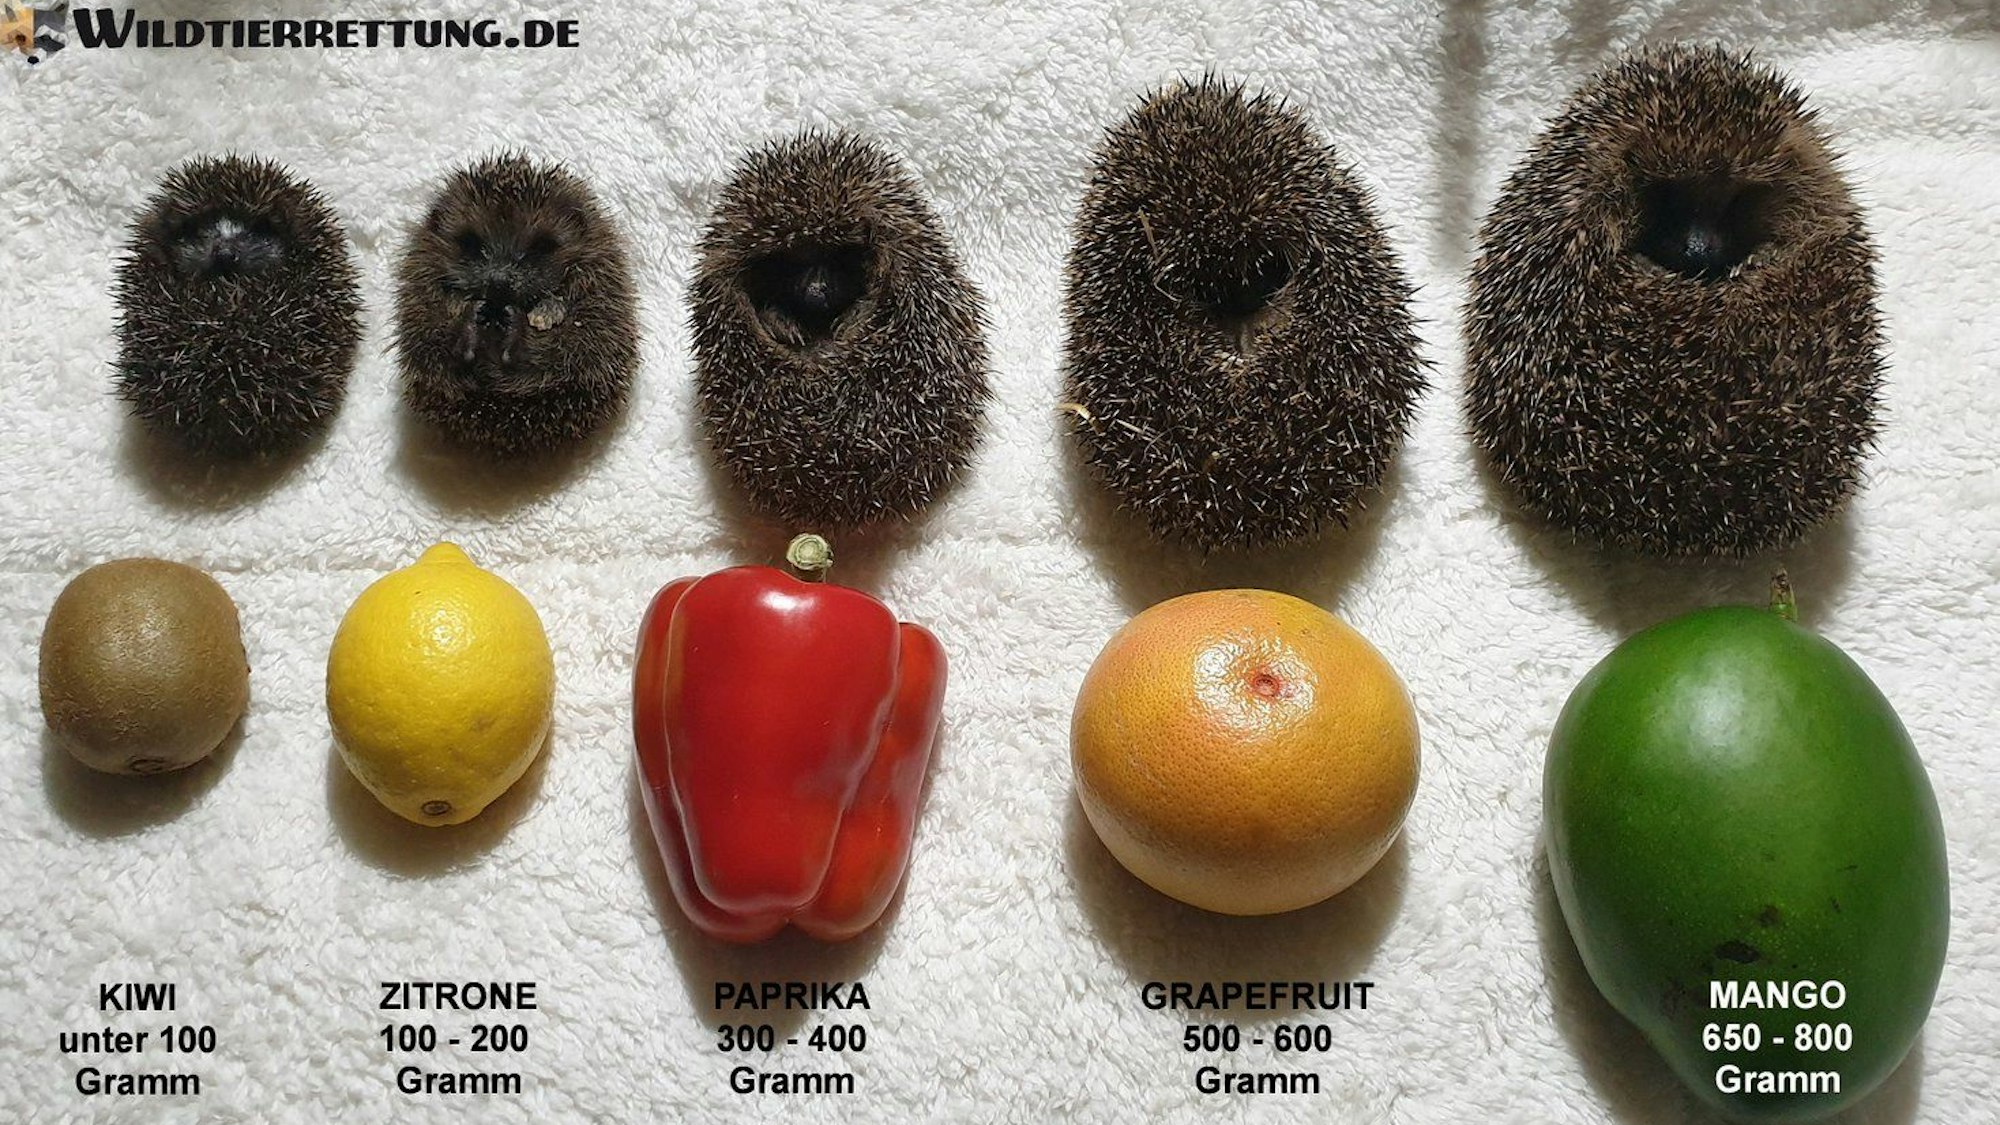 Mit der Größe unterschiedlicher Gemüsearten lässt sich das ungefähre Gewicht von Igeln ermitteln. Das undatierte Foto wurde von der Wildtierrettung Notkleintiere e.V. aufgenommen.